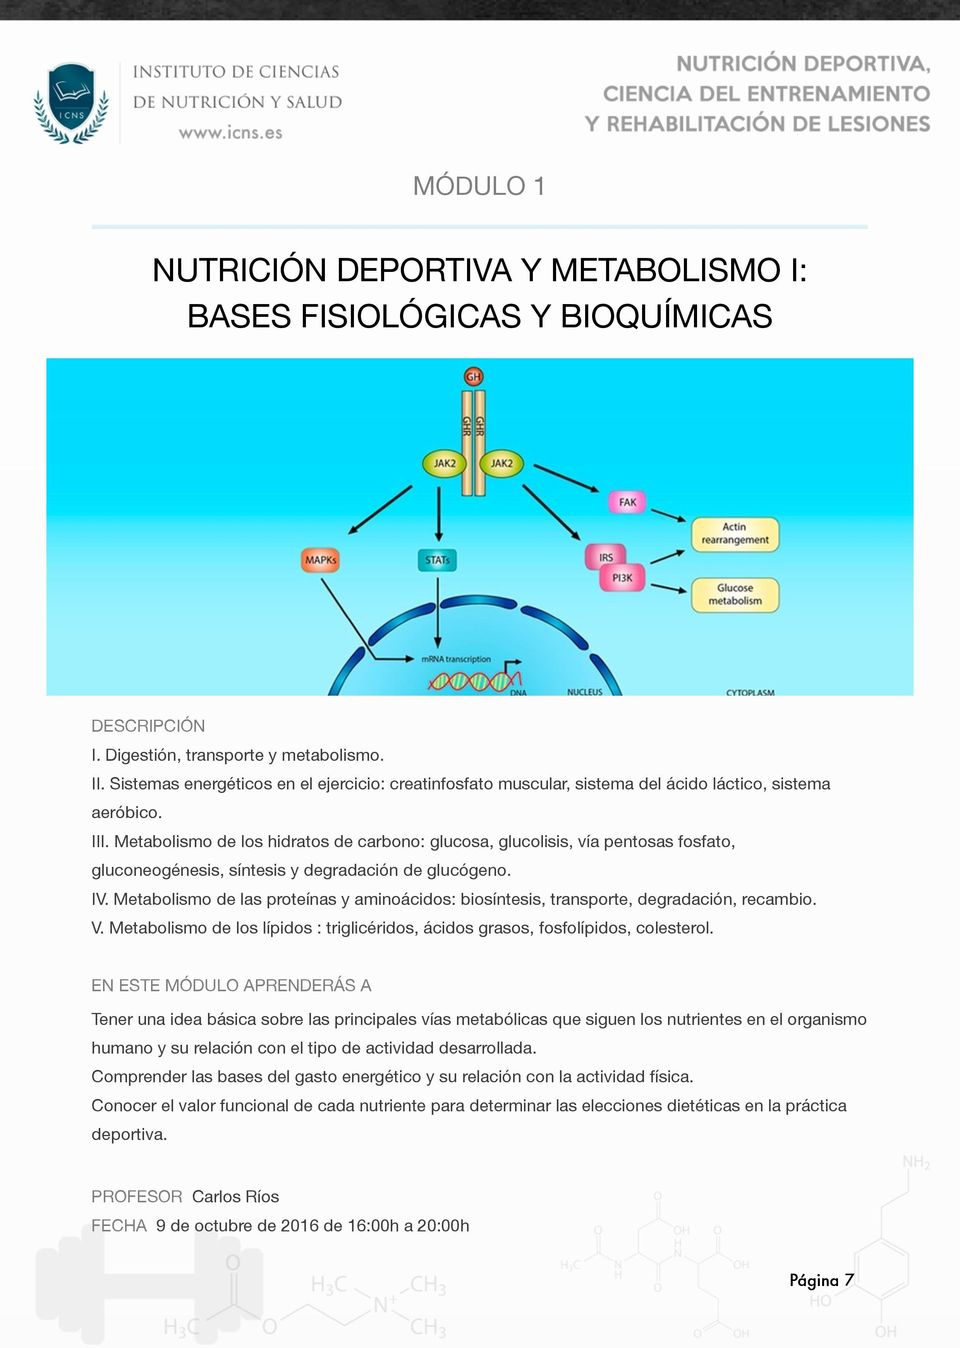 Metabolismo de los hidratos de carbono: glucosa, glucolisis, vía pentosas fosfato, gluconeogénesis, síntesis y degradación de glucógeno. IV.